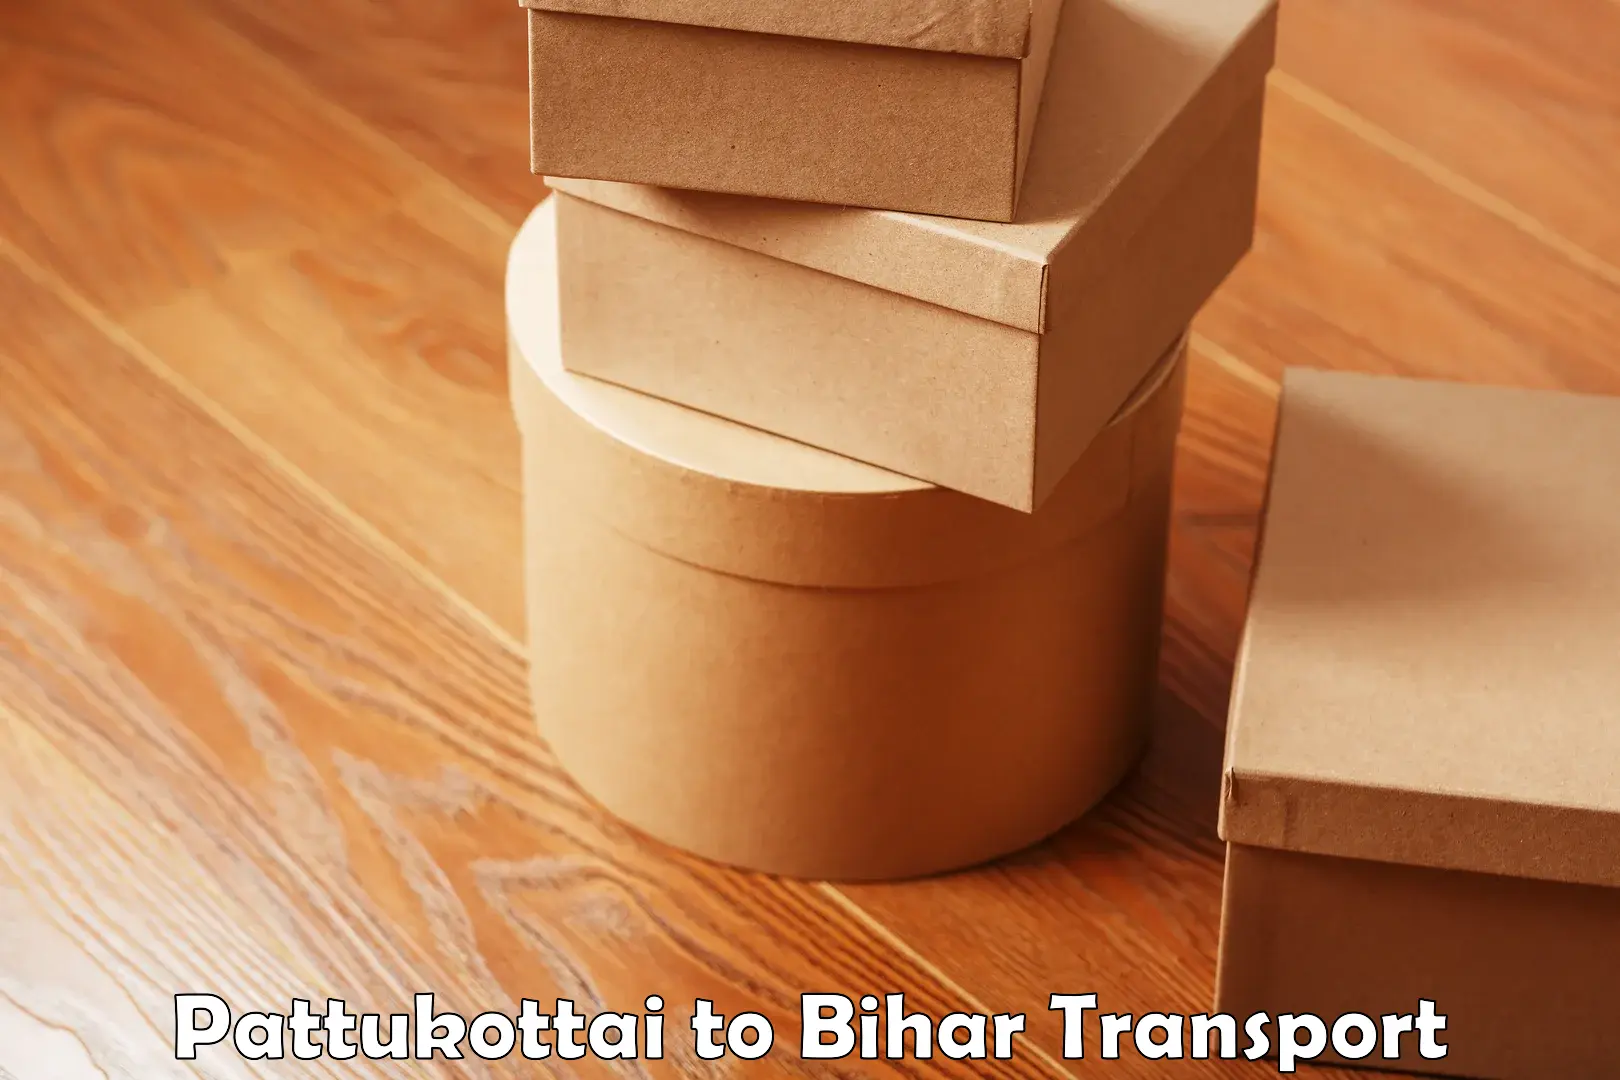 Transport in sharing Pattukottai to Bihta